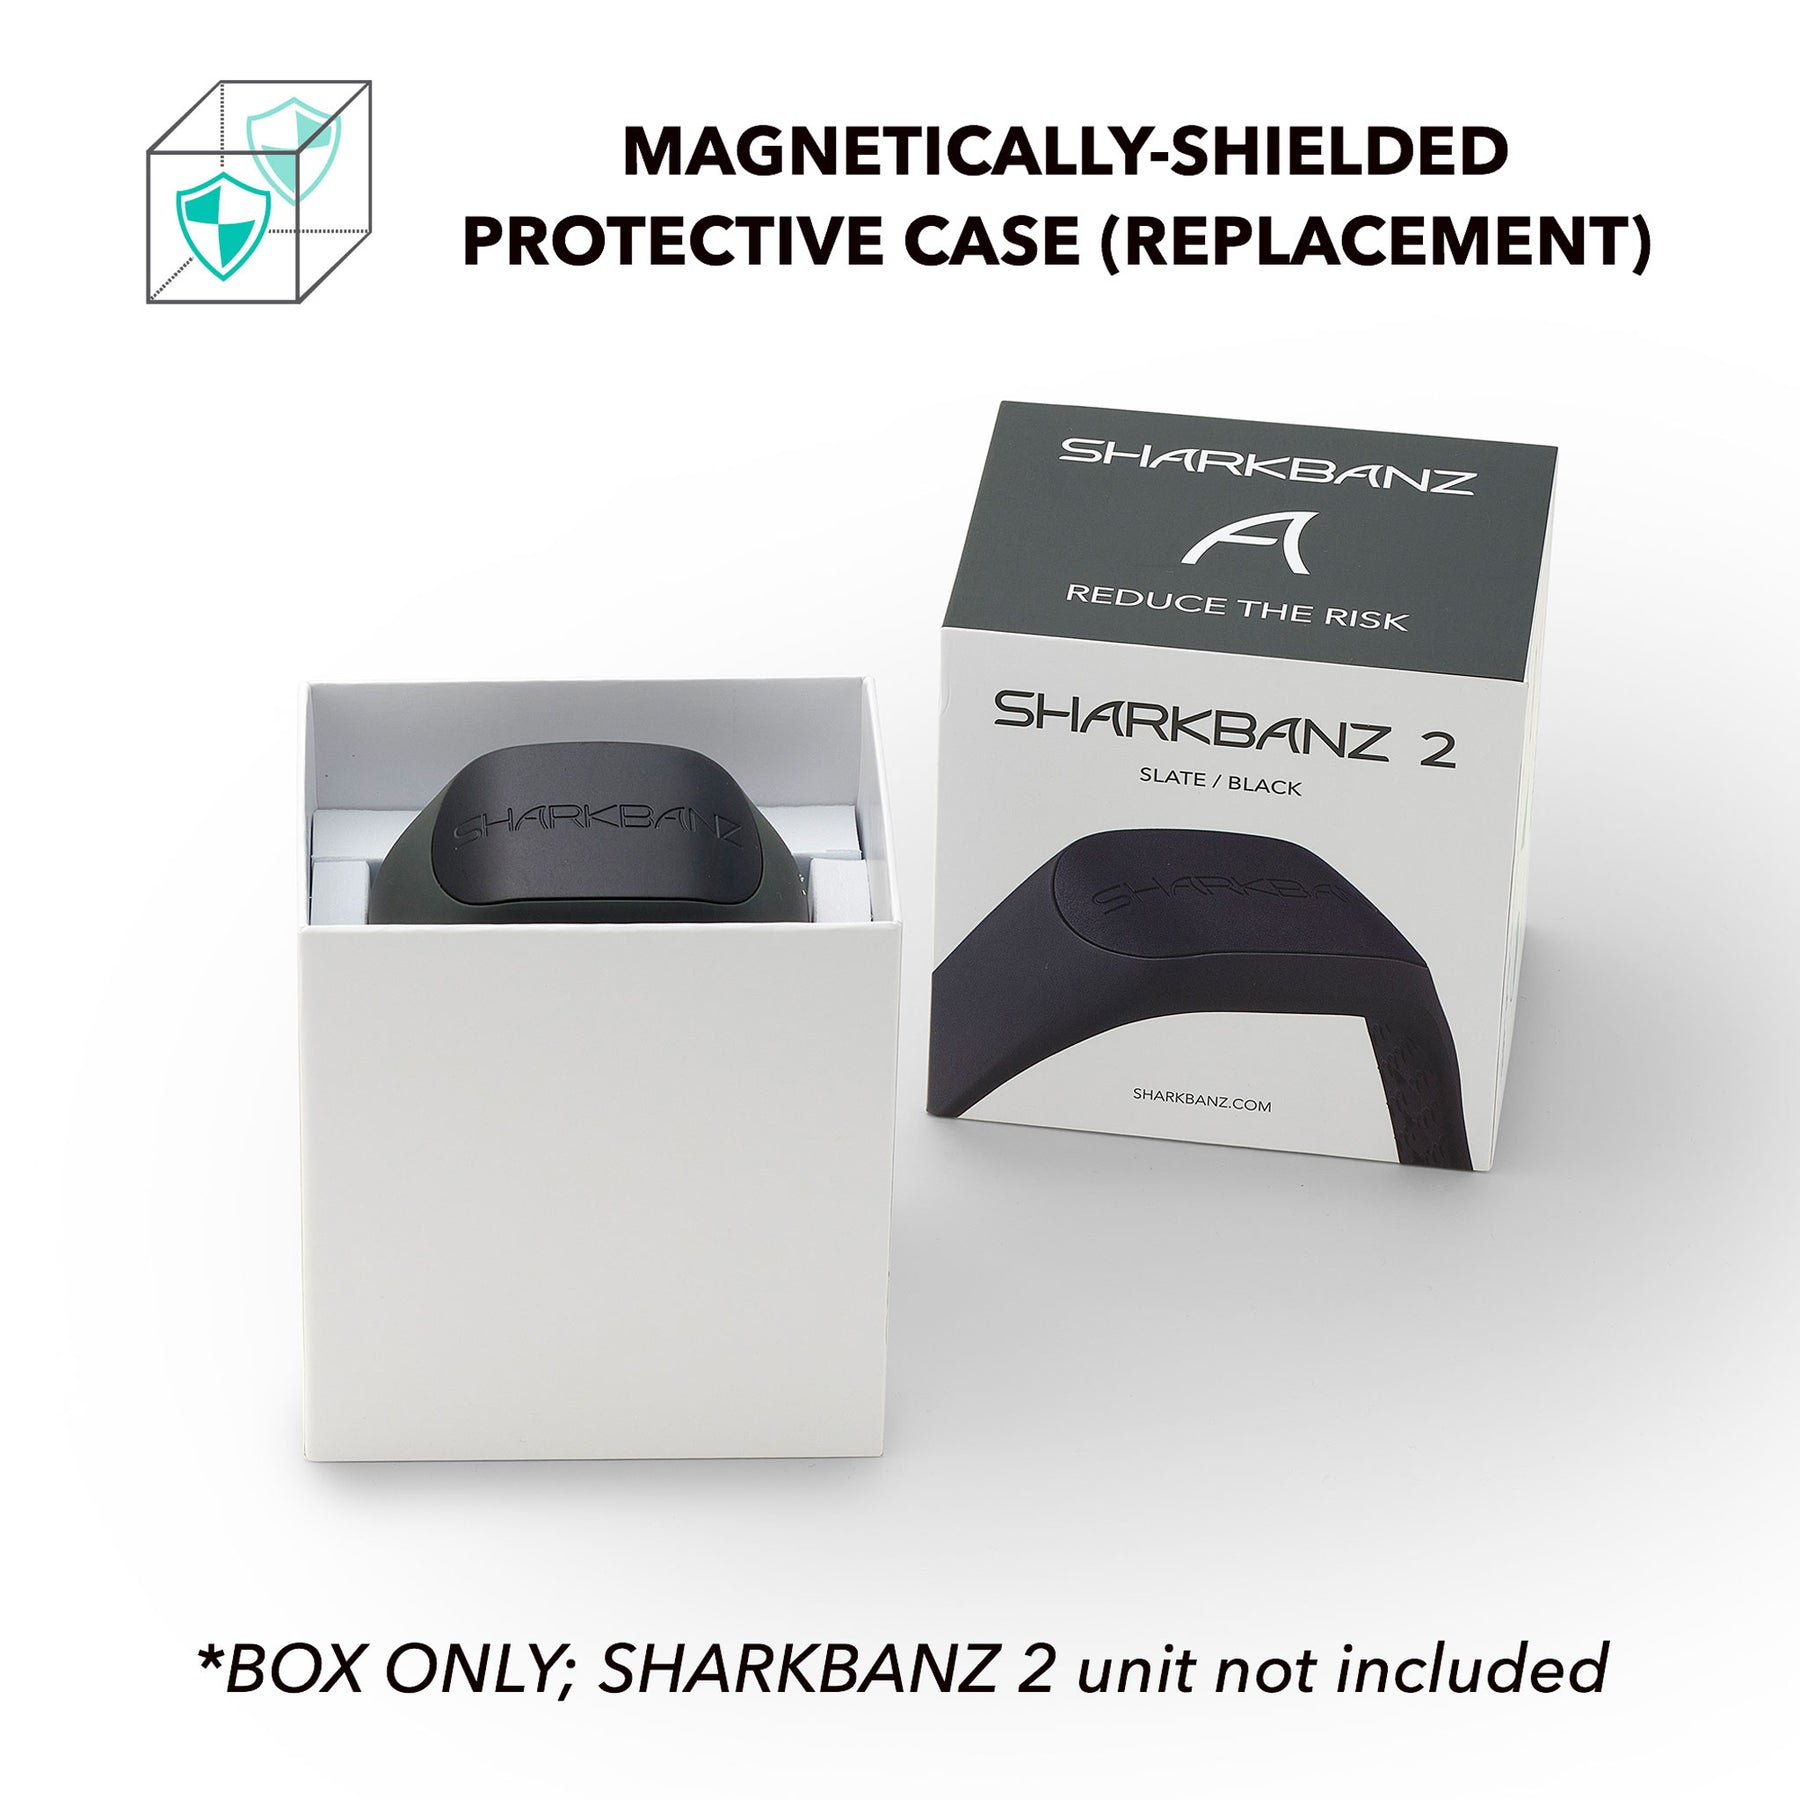 Sharkbanz Replacement Protective Case, magnetische aufbewahrungstasche 